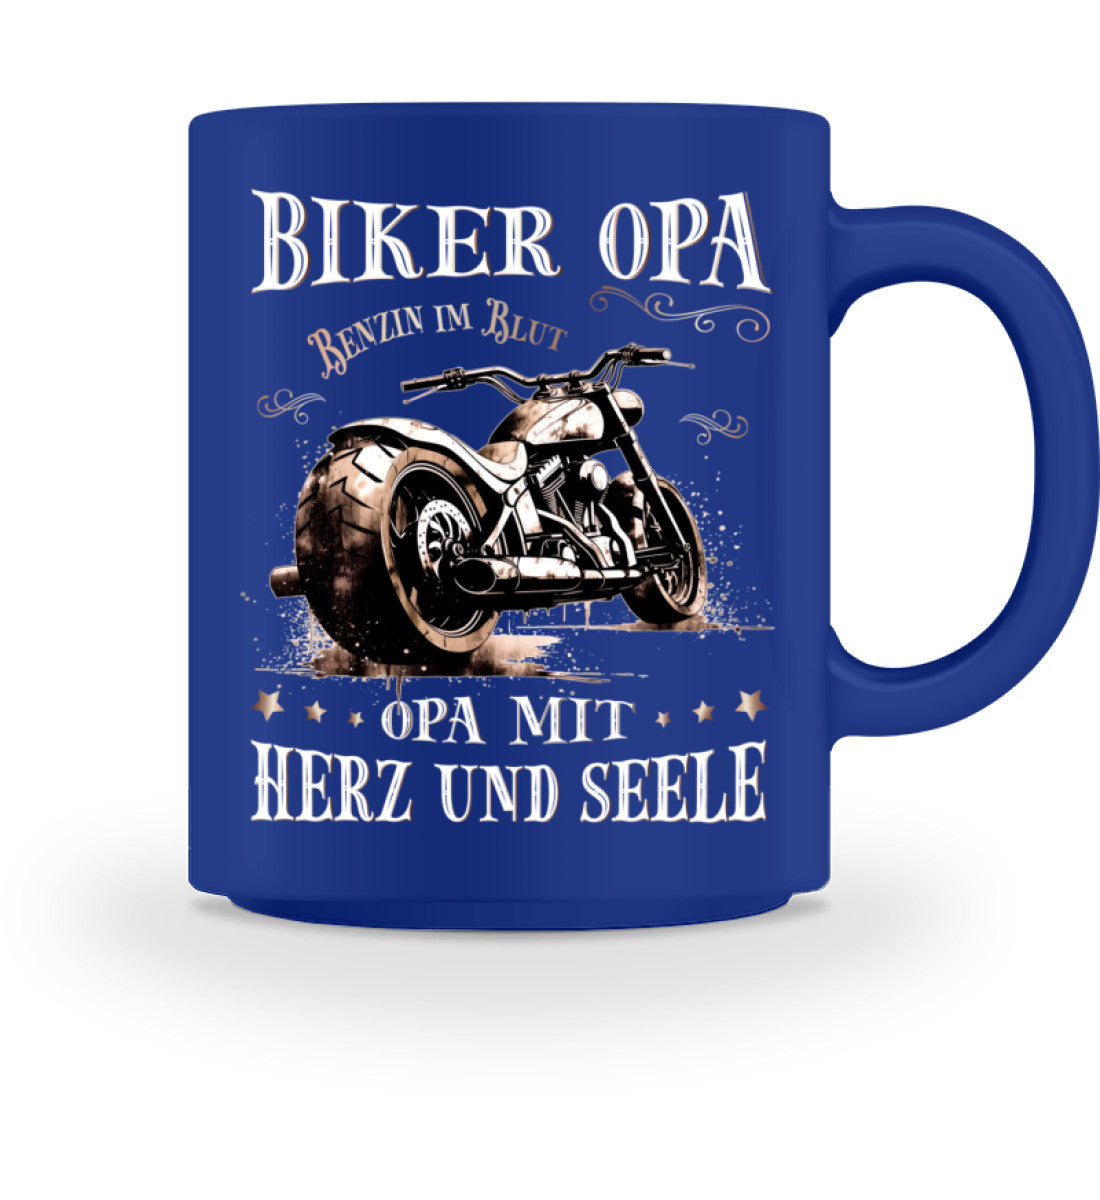 Eine Tasse für Motorradfahrer von Wingbikers, mit dem beidseitigen Aufdruck, Biker Opa - Benzin im Blut - Opa mit Herz und Seele, in royal blau.